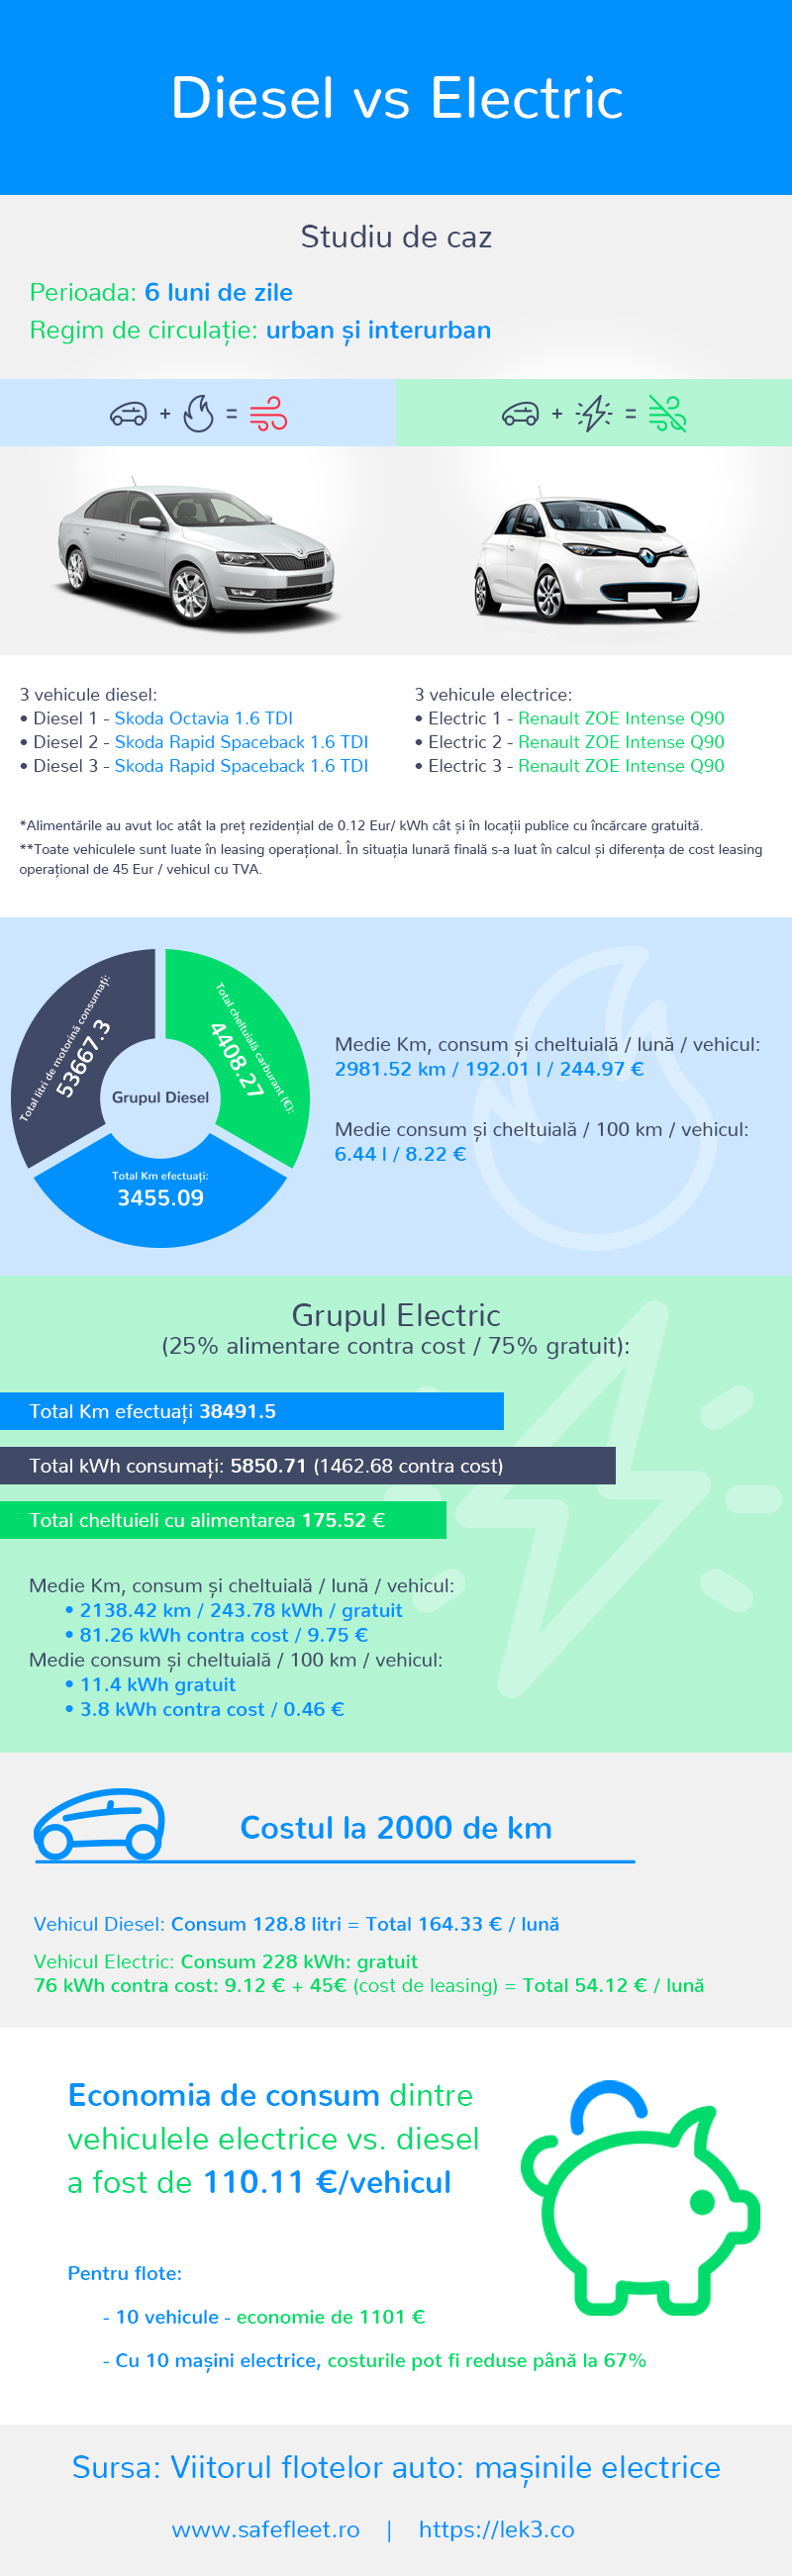 infografic_lek3.co_diesel_vs_electric_RO_v4_22042019